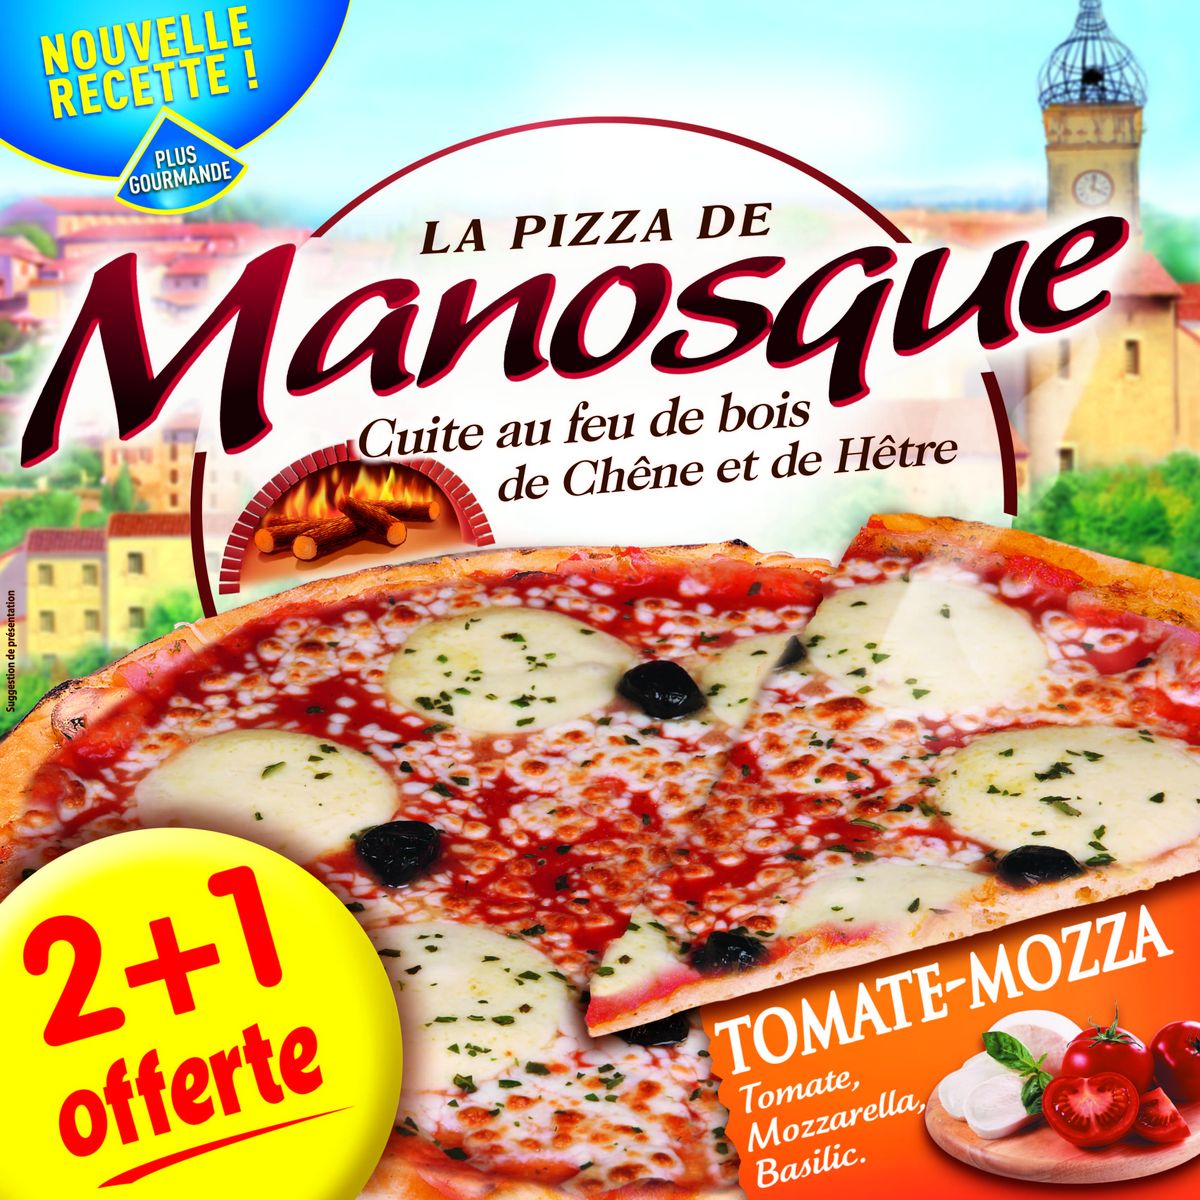 LA PIZZA DE MANOSQUE Pizza tomate mozzarella cuite au feu de bois 2 + 1 offerte 400g